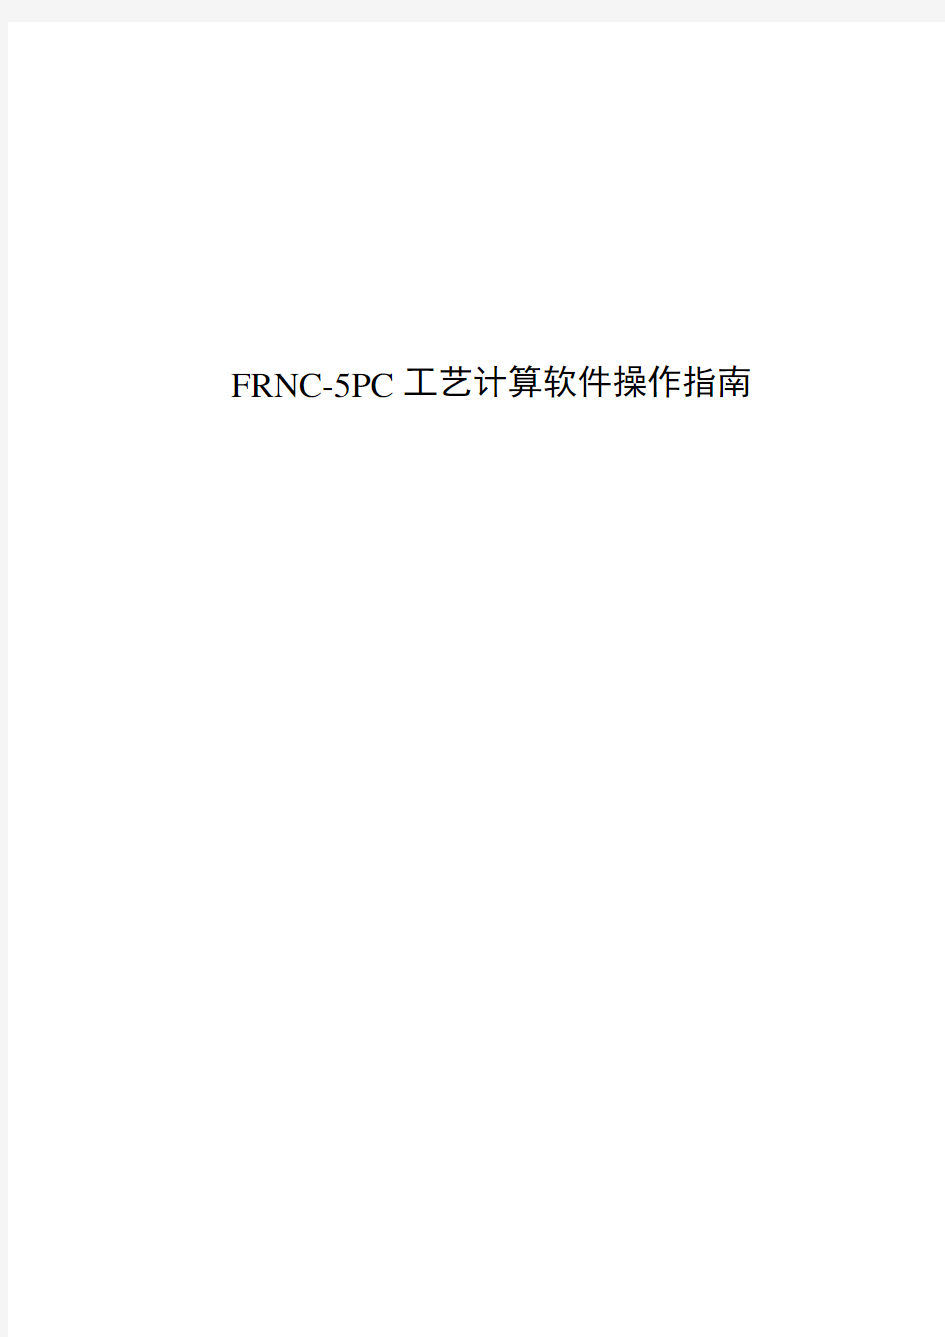 (工艺技术)FRNC5PC工艺计算软件中文操作指南